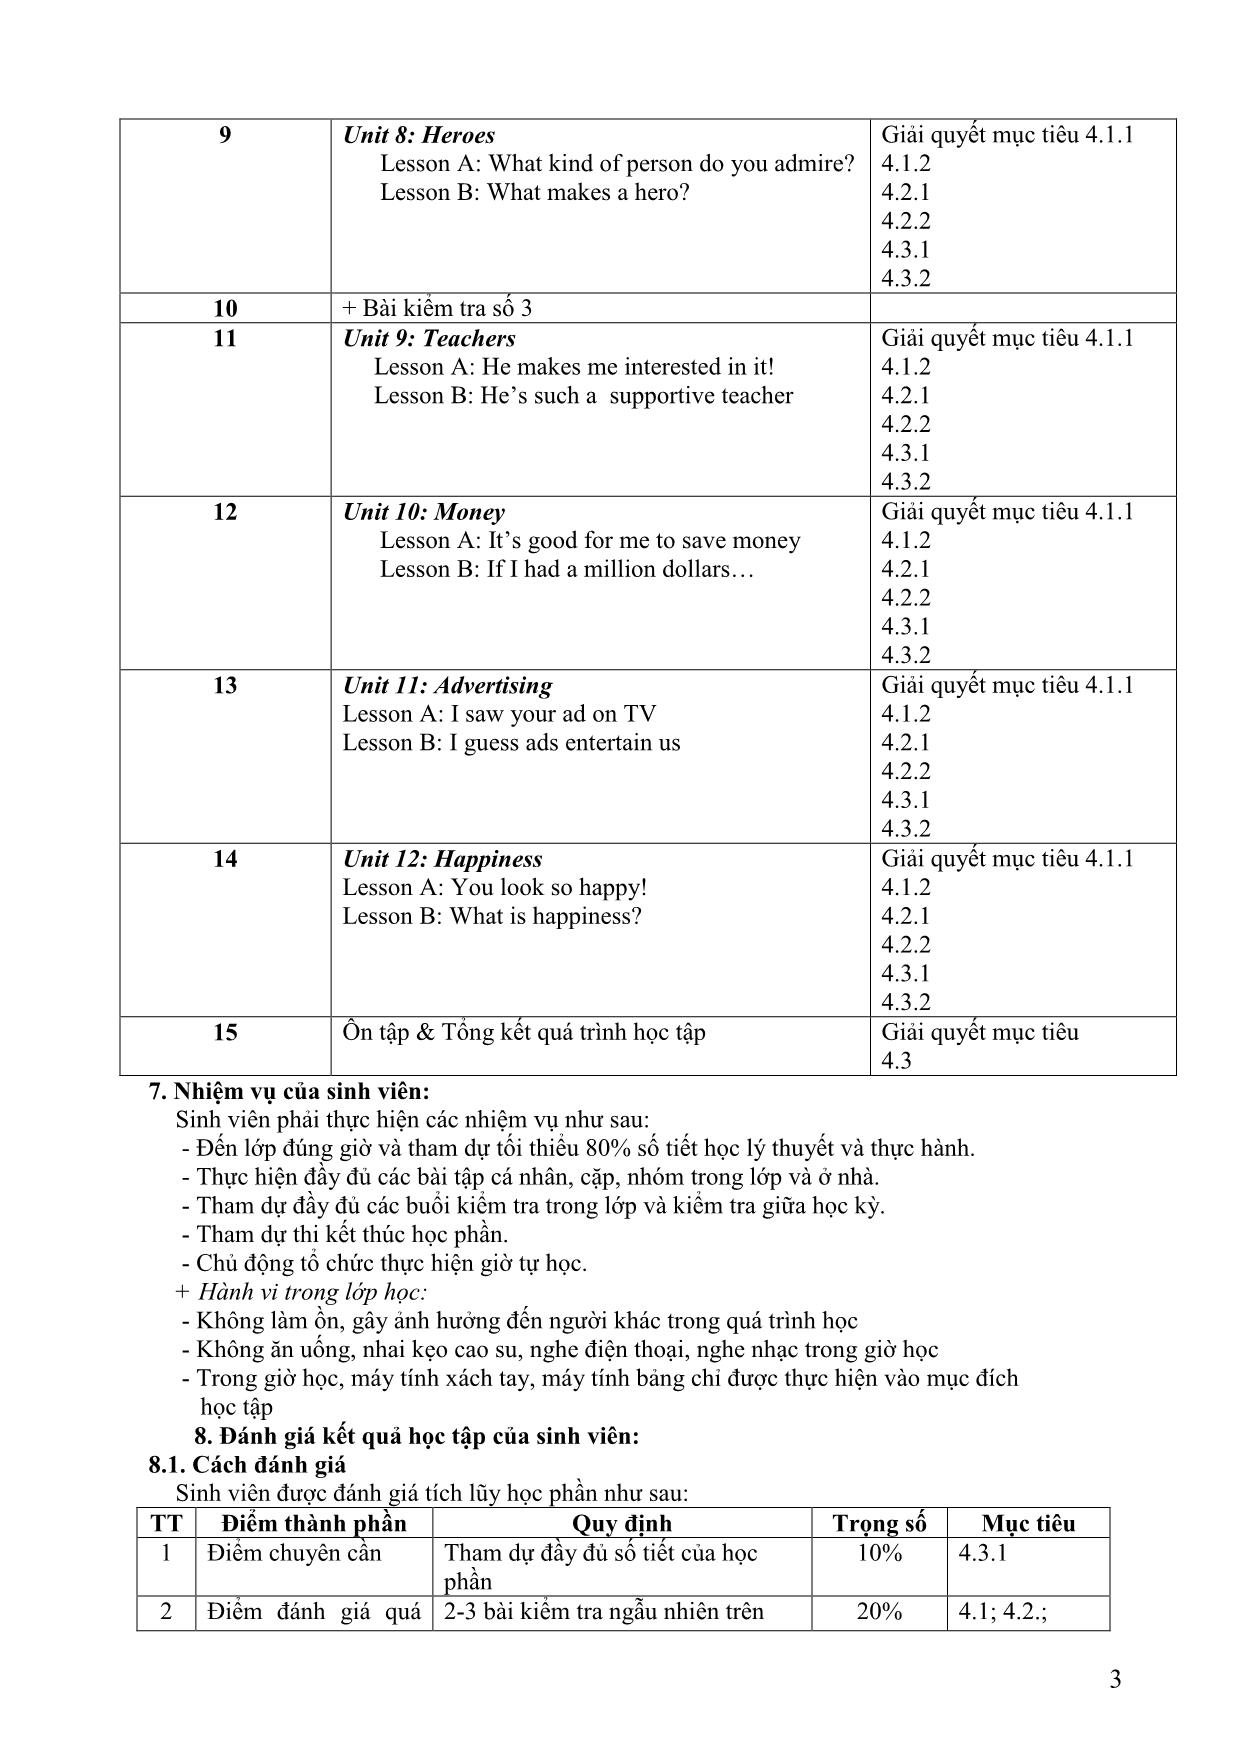 Đề cương học phần Nghe tiếng Anh 2 (Listening 2) trang 3